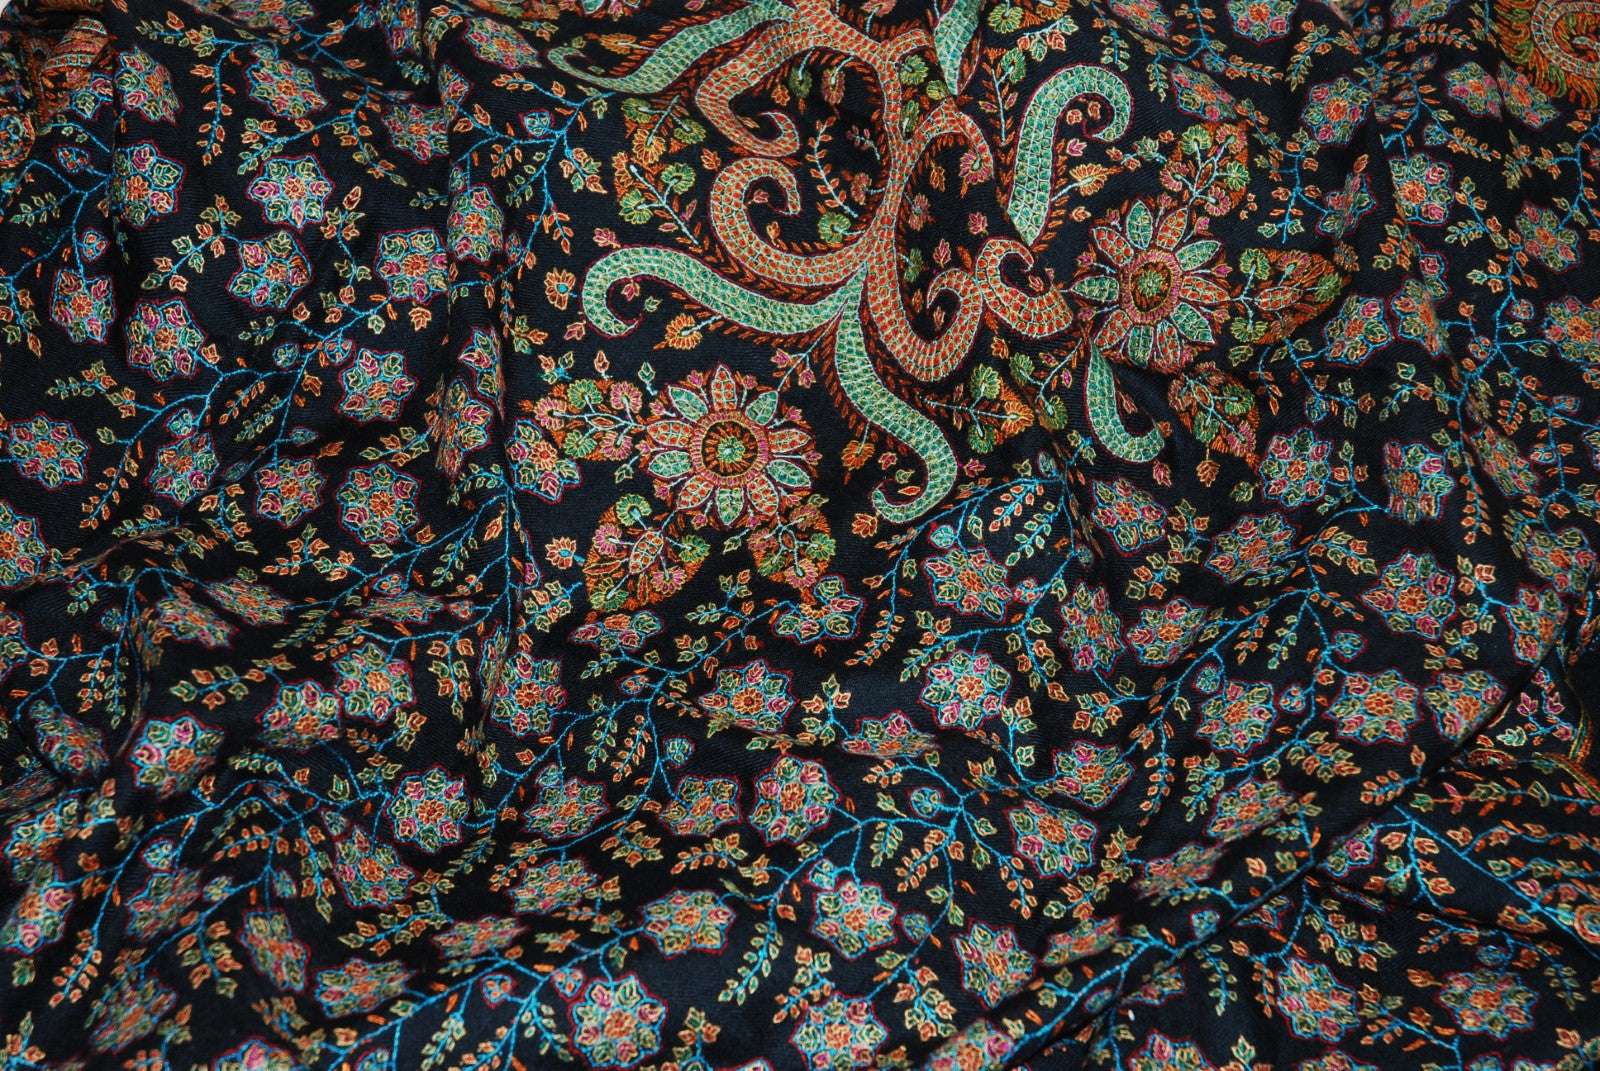 Kashmir Pashmina Cashmere "Sozni" Needlework Jamavar Shawl Black, Multicolor Embroidery #PJM-005